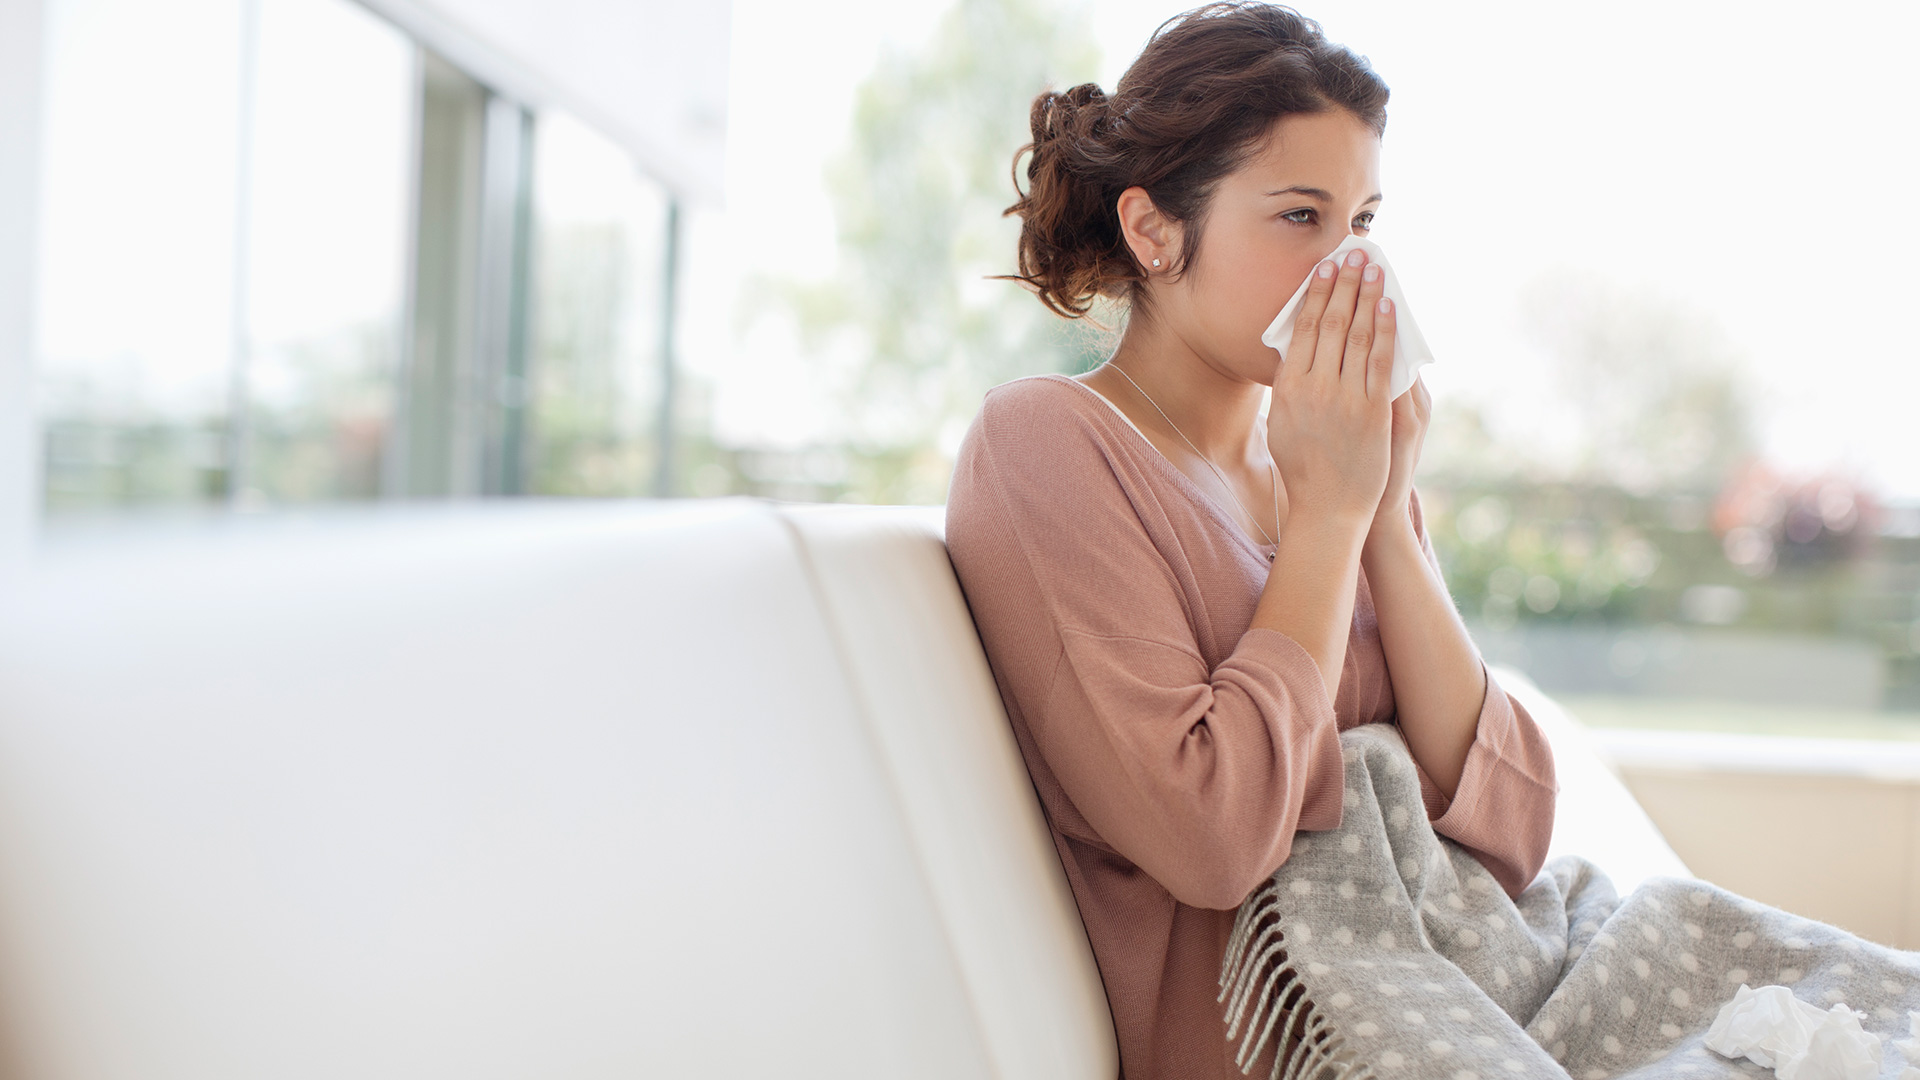  Los síntomas más comunes de la condición post-COVID-19 conocida como COVID prolongada incluyen fatiga, dificultad para respirar y disfunción cognitiva (Getty)